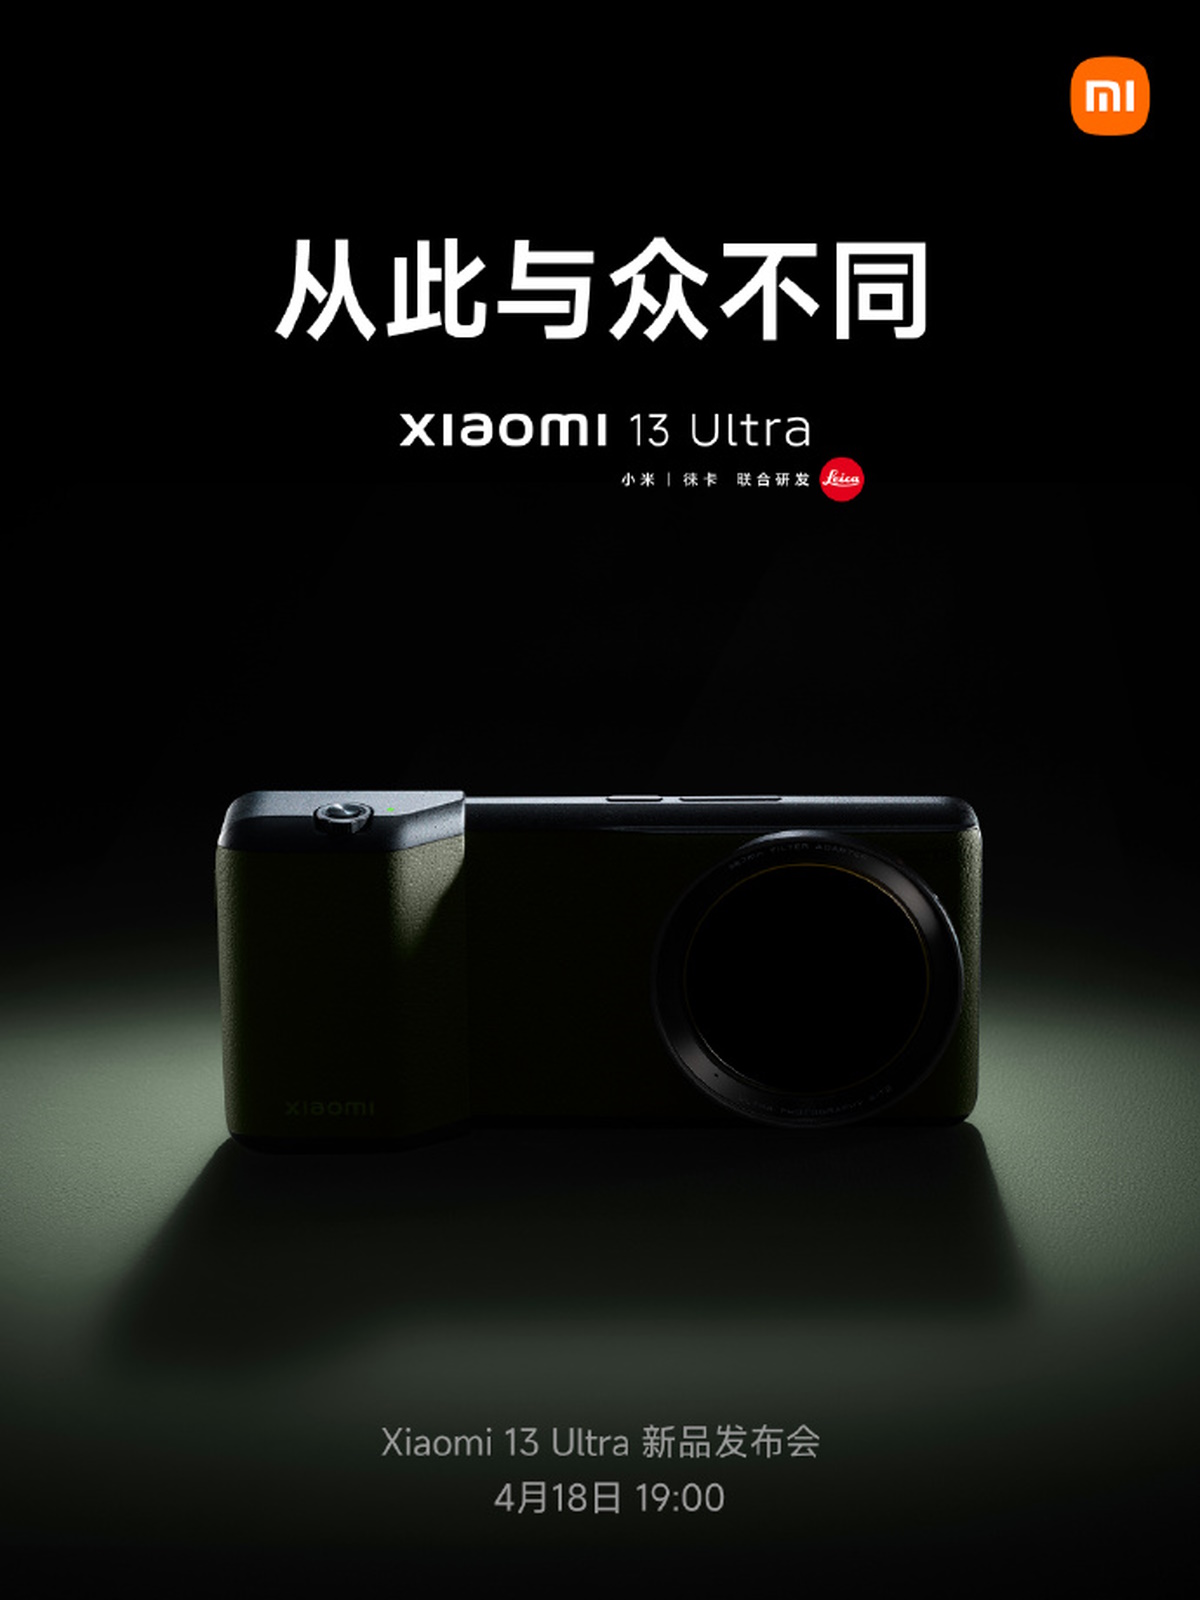 Xiaomi 13 Ultra camera grip accessory 1